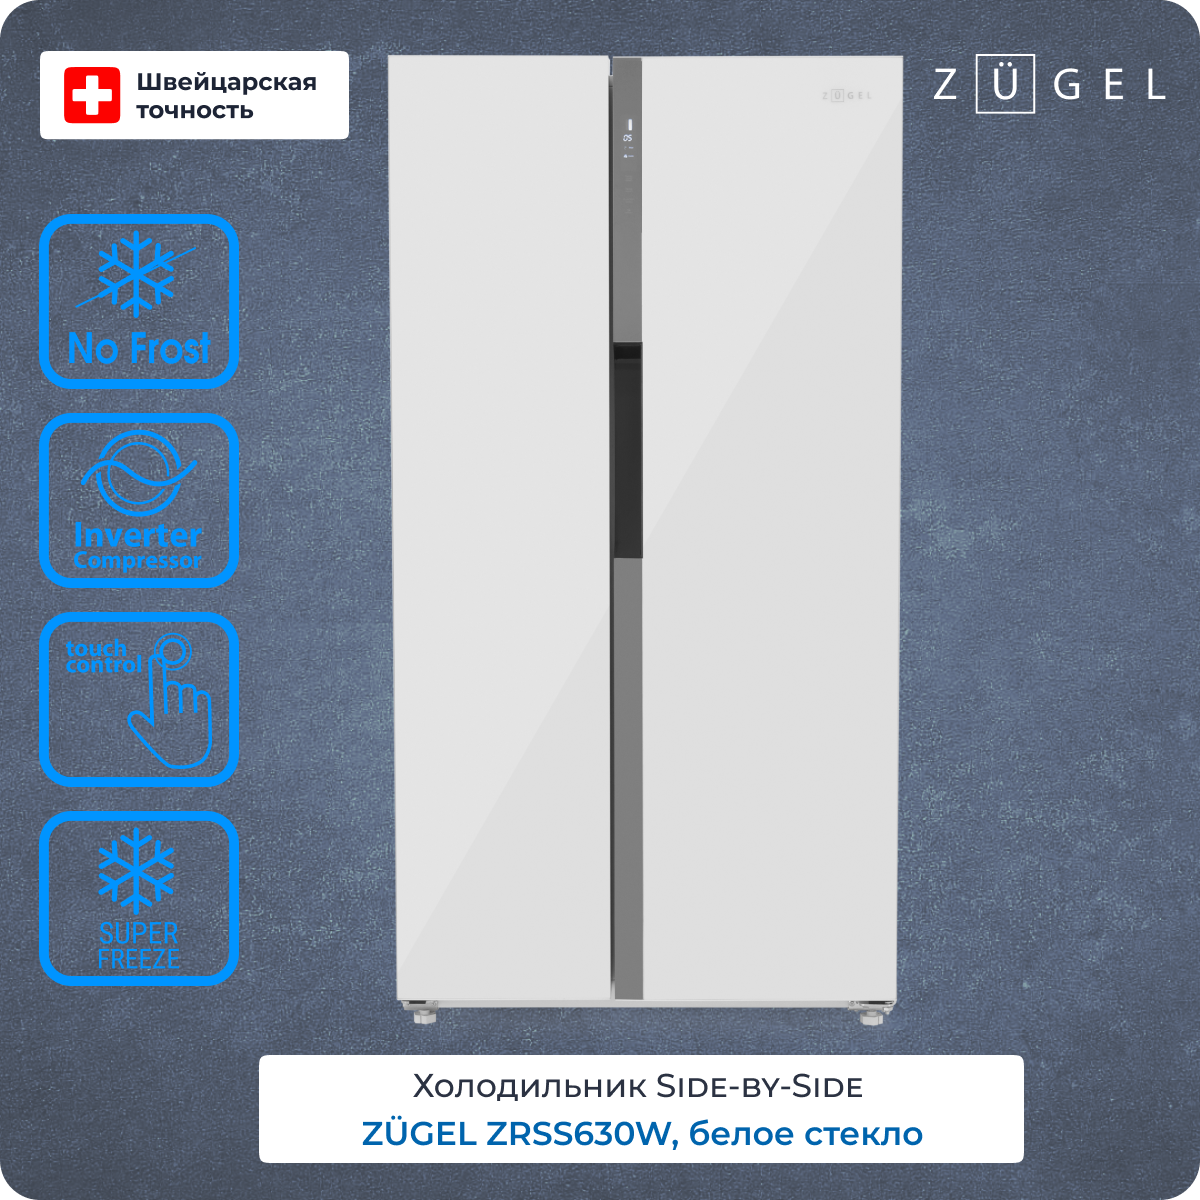 Холодильник ZUGEL ZRSS630W белый холодильник zugel zrss630b